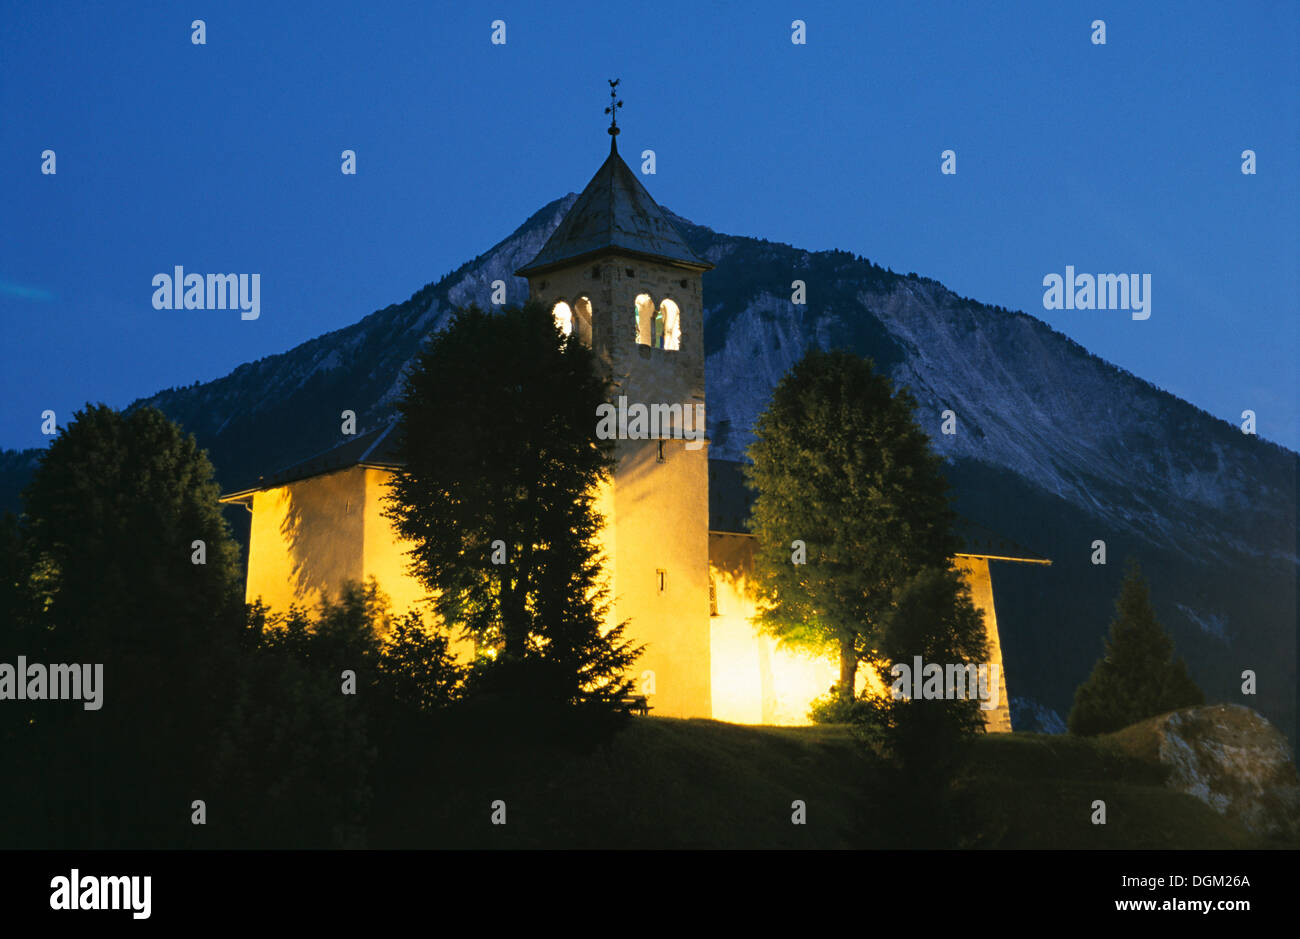 Church in Champagny-en-Vanoise, Vanoise Nationalpark, Champagny-en-Vanoise, Haute Savoie, France Stock Photo